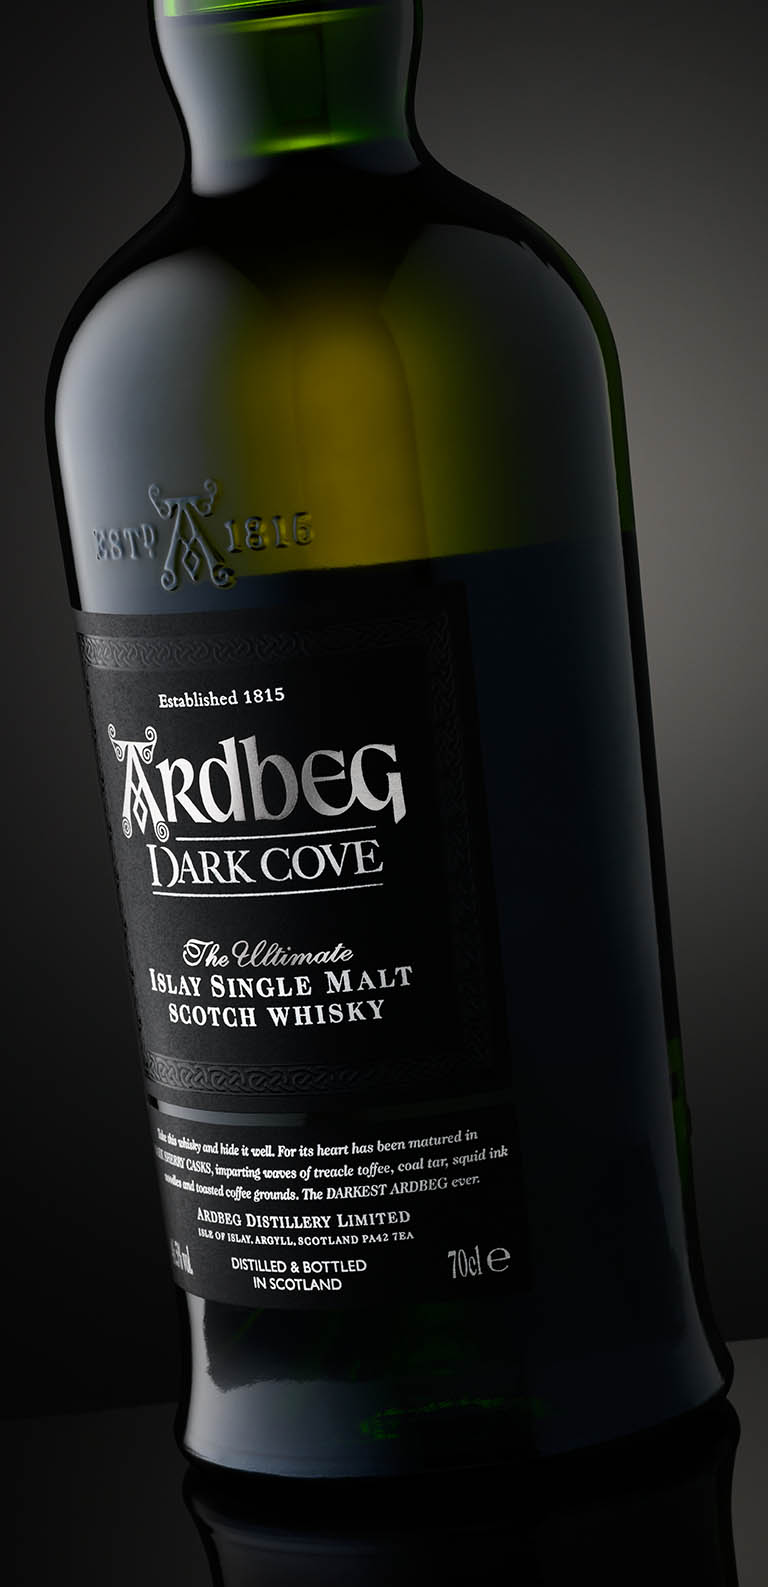 Packshot Factory - Black background - Ardbeg whisky bottle label close up